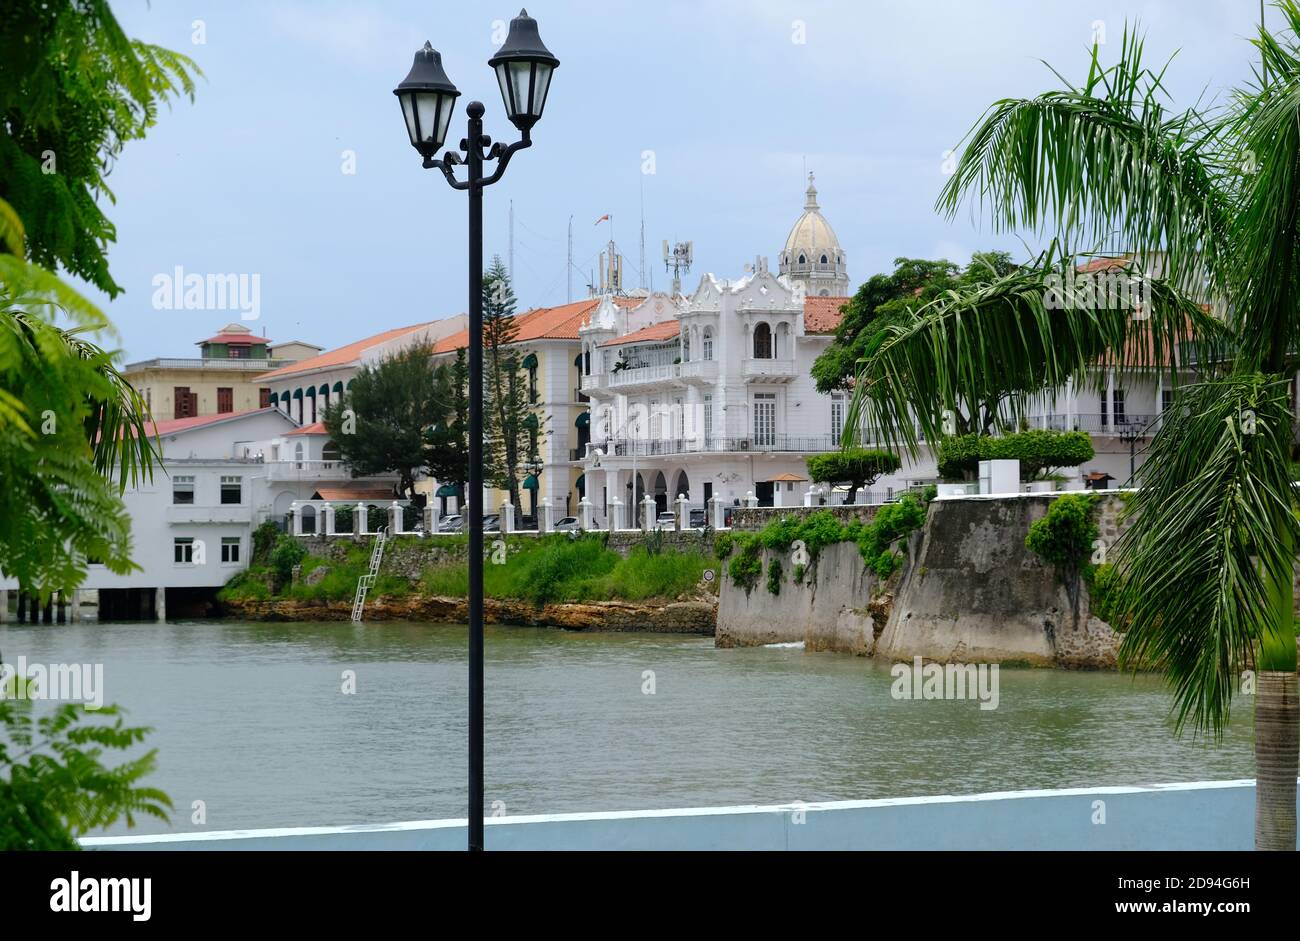 Panama City - Blick auf die Küste Kolonialzeit Häuser in San Felipe Auch Casco Antiguo Stockfoto